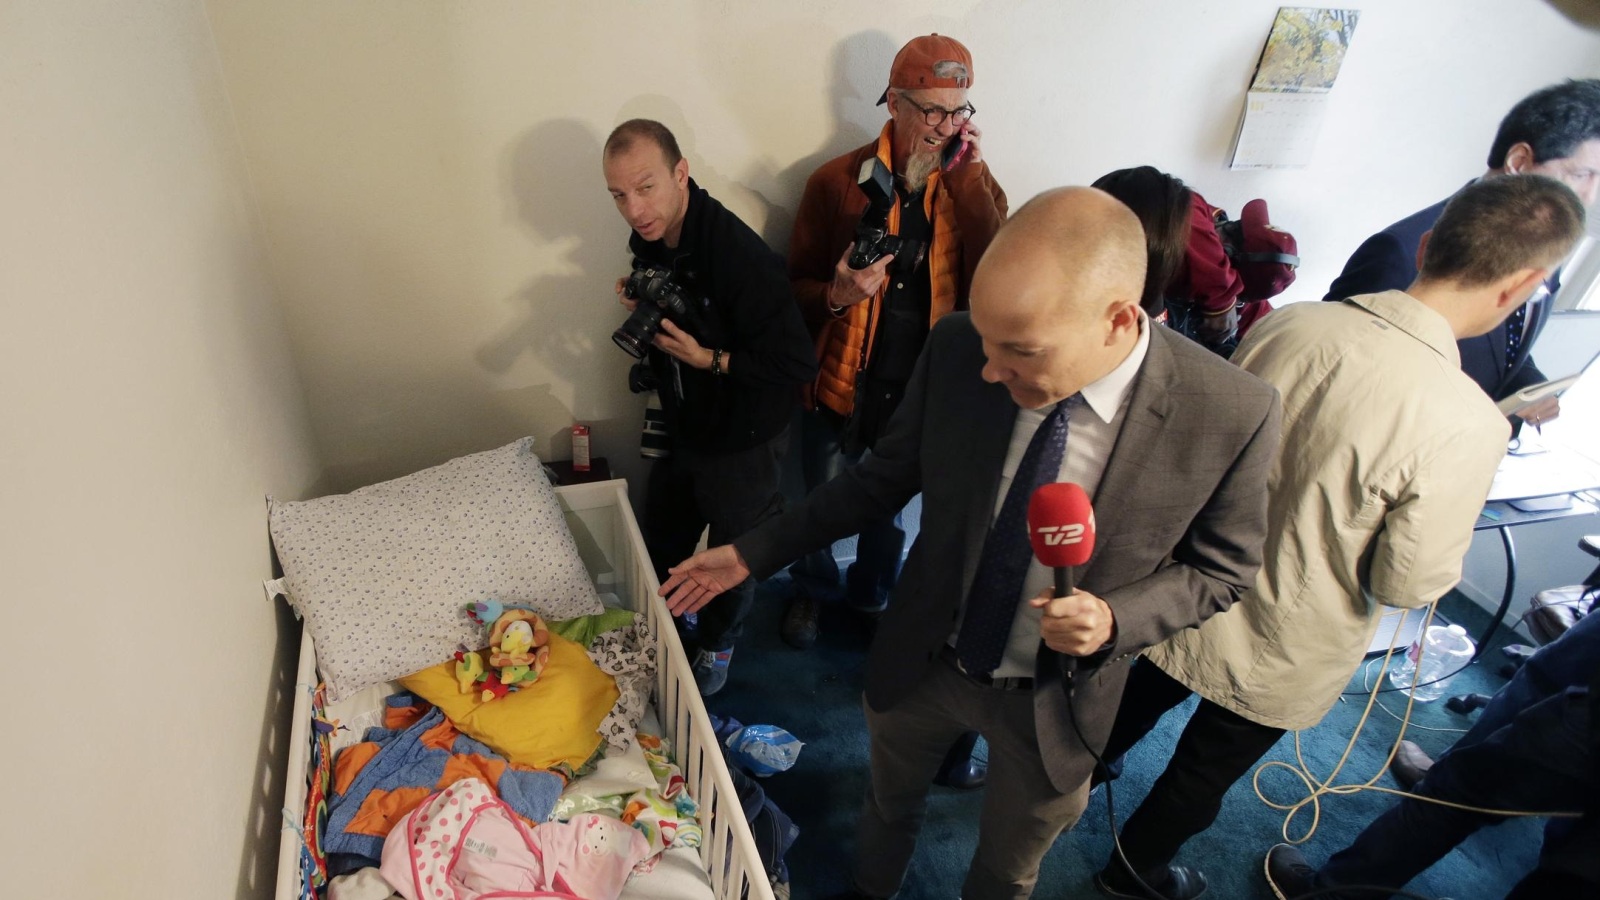 وسائل الإعلام دخلت شقة منفذي الهجوم وبعض المحطات نقلت البث من هناك وفي الصورة غرفة الرضيعة(أسوشيتد برس)